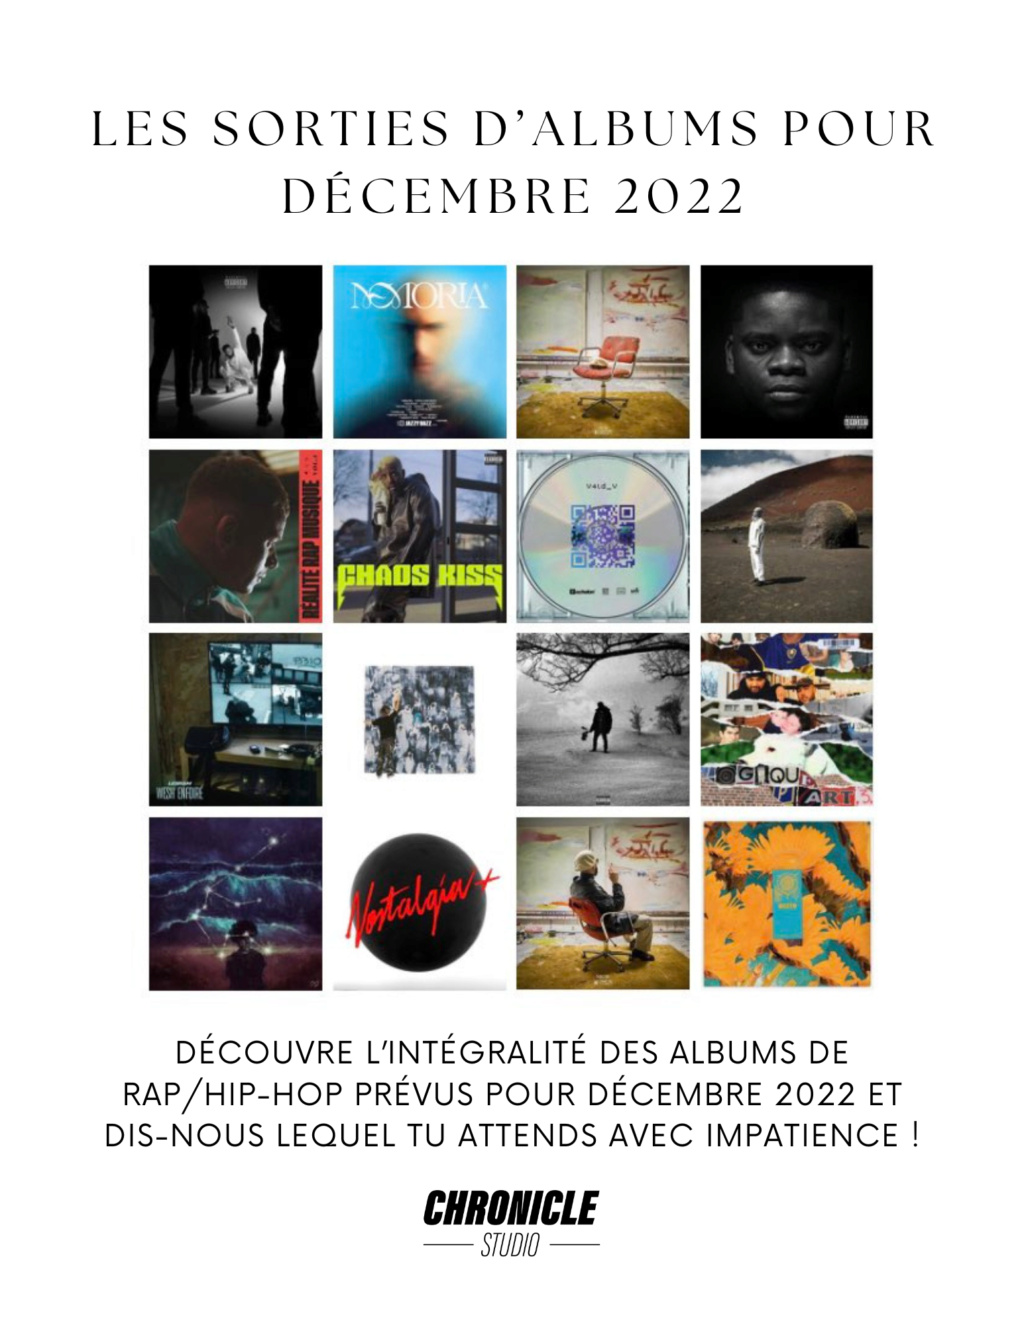 Les sorties d'albums RAP/Hip-Hop pour décembre 2022 182